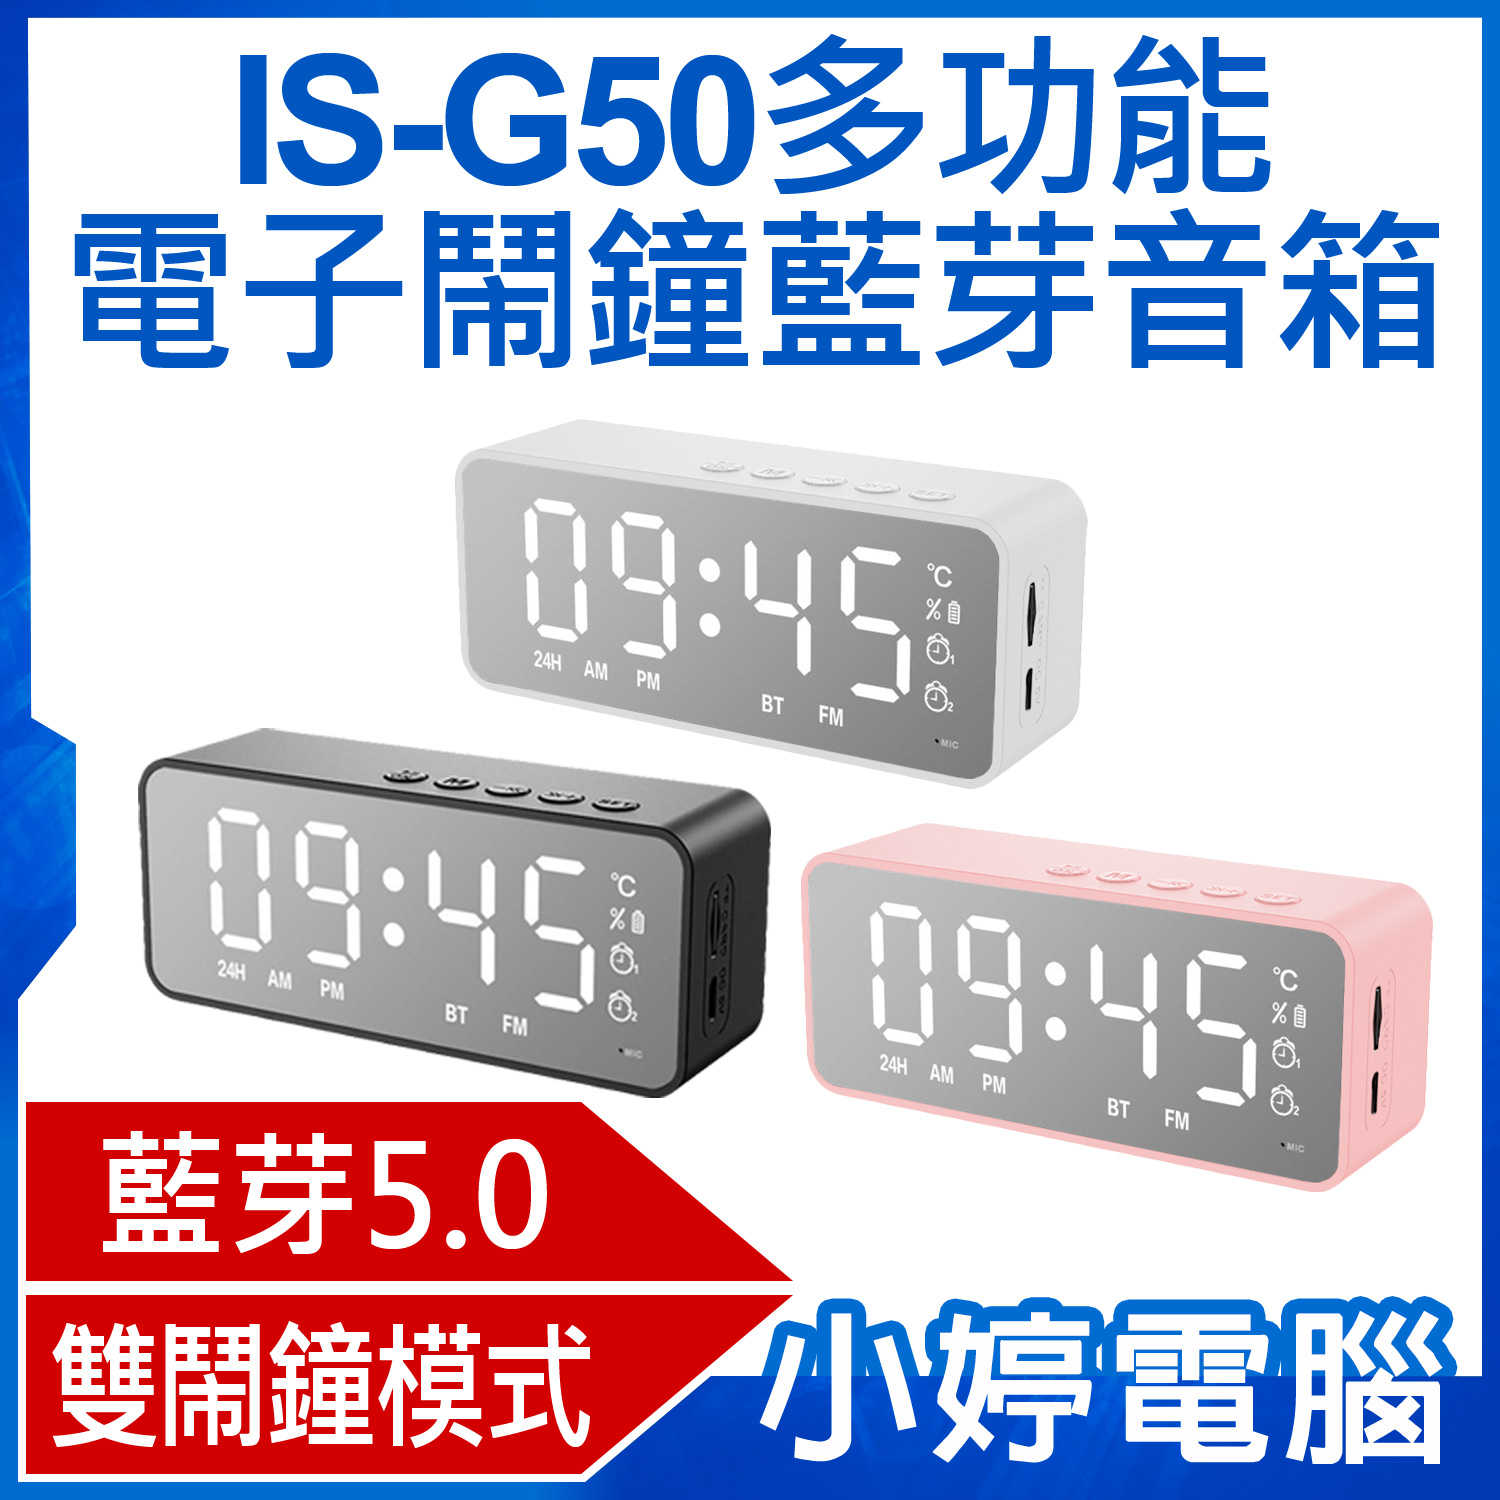 【小婷電腦】IS-G50多功能電子鬧鐘藍芽音箱 藍芽V5.0 音響喇叭 雙鬧鐘 持久續航 溫度顯示 收音機